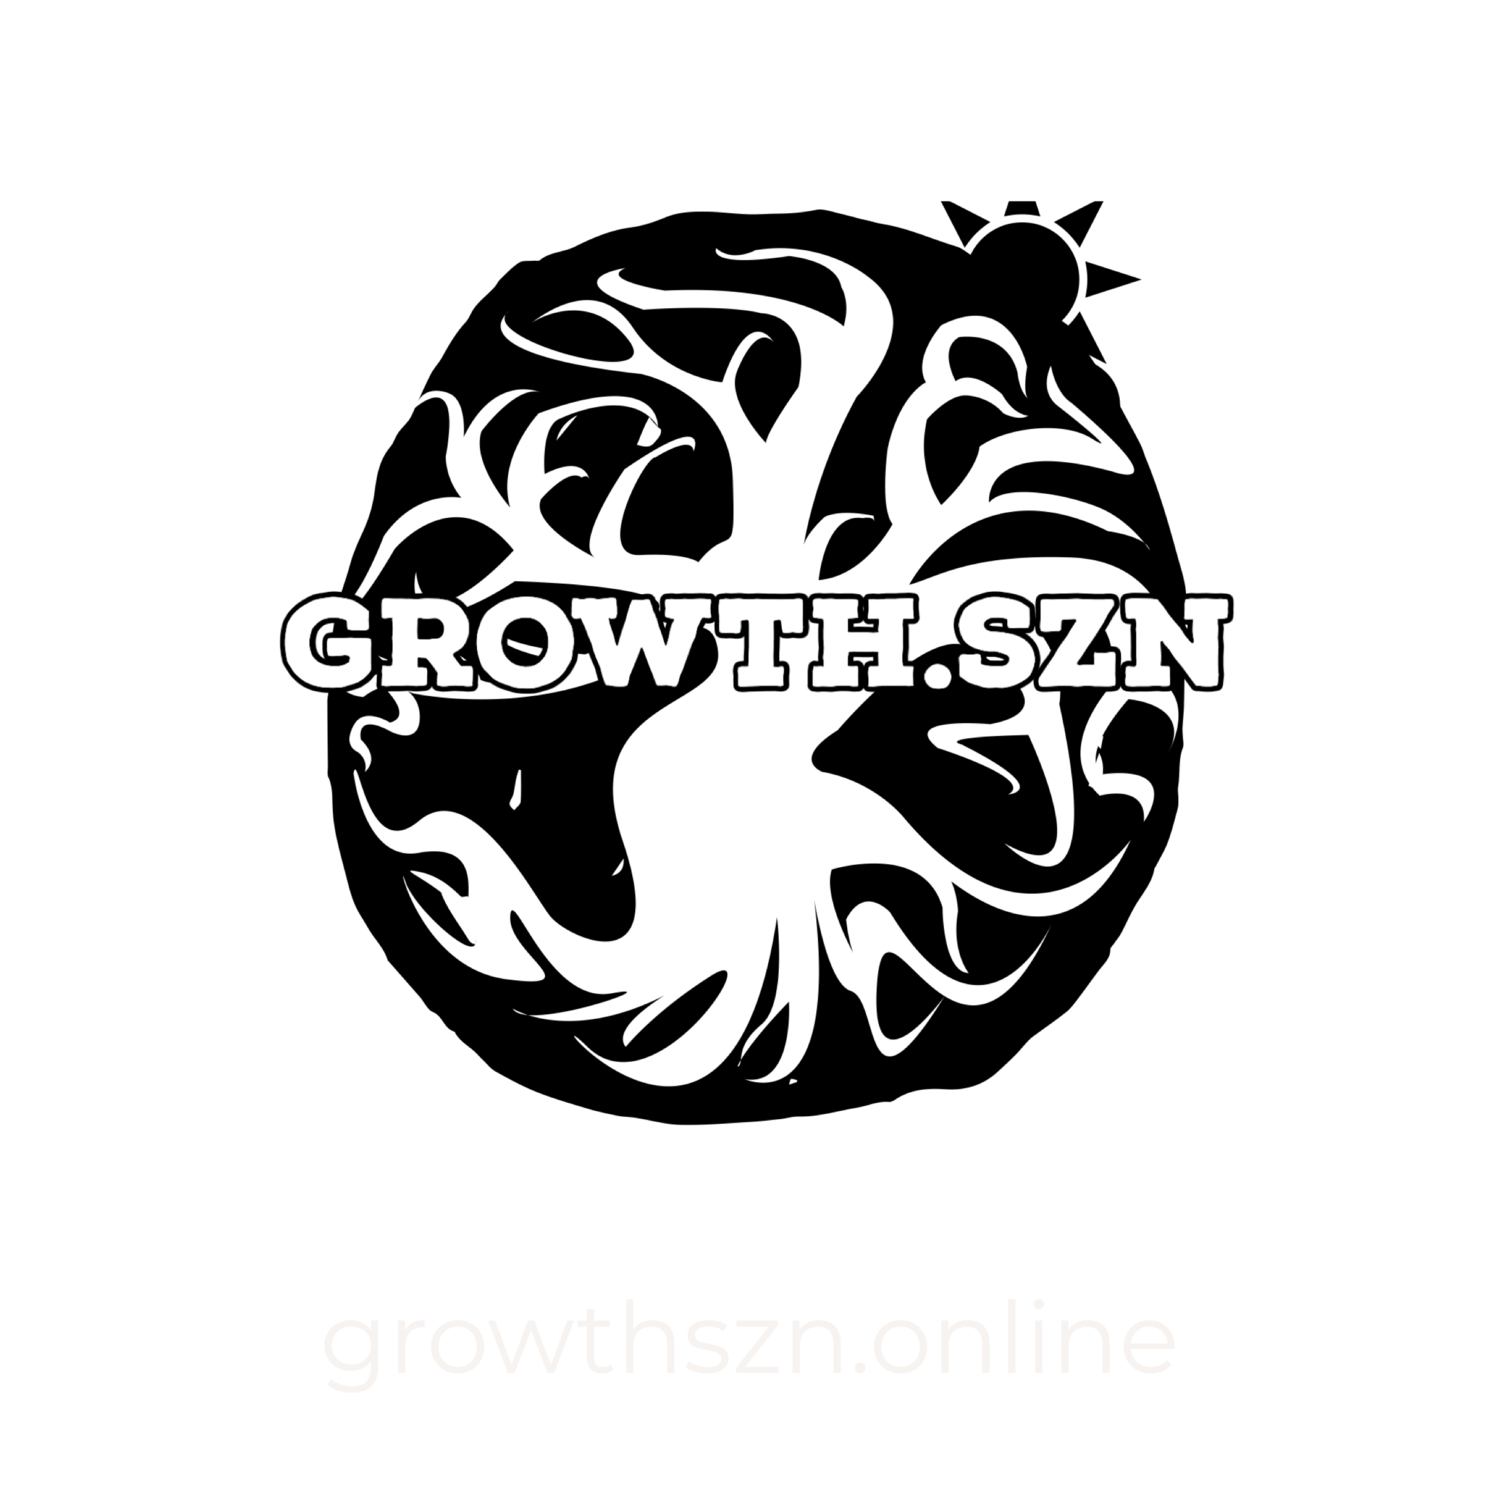 GrowthSZN.online